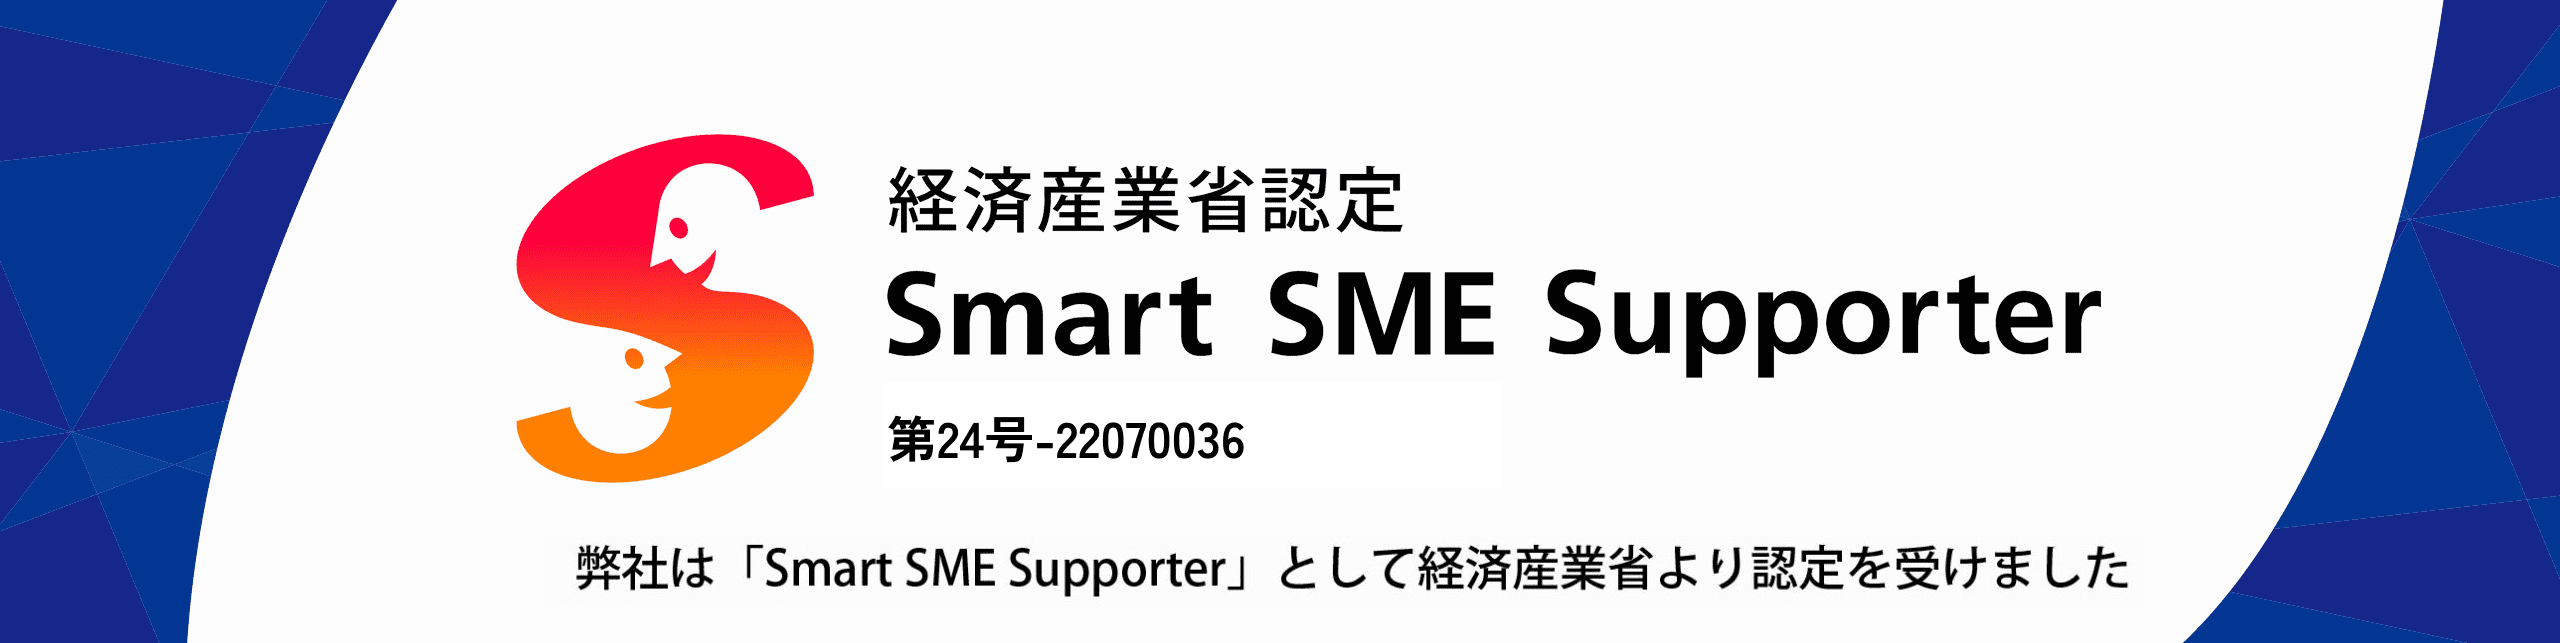 経済産業省認定 Smart SME Supporter 第24号-22070036 弊社は「Smart SME Supporter」として経済産業省より認定を受けました